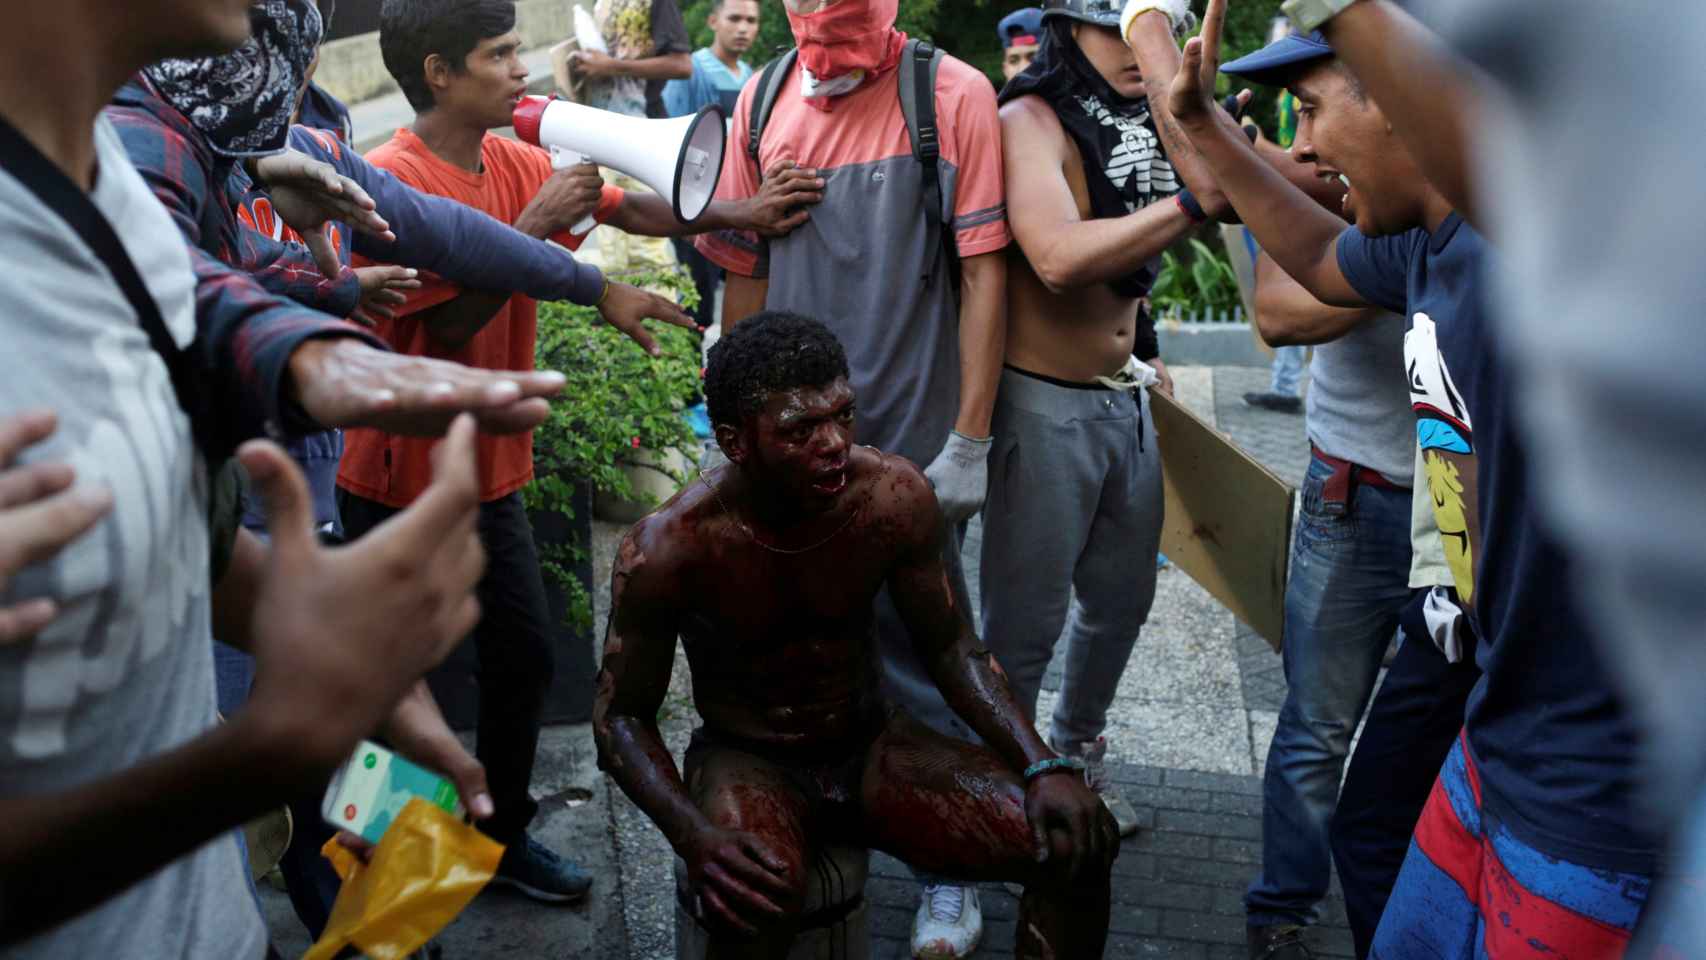 El herido, con graves quemaduras, rodeado de manifestantes